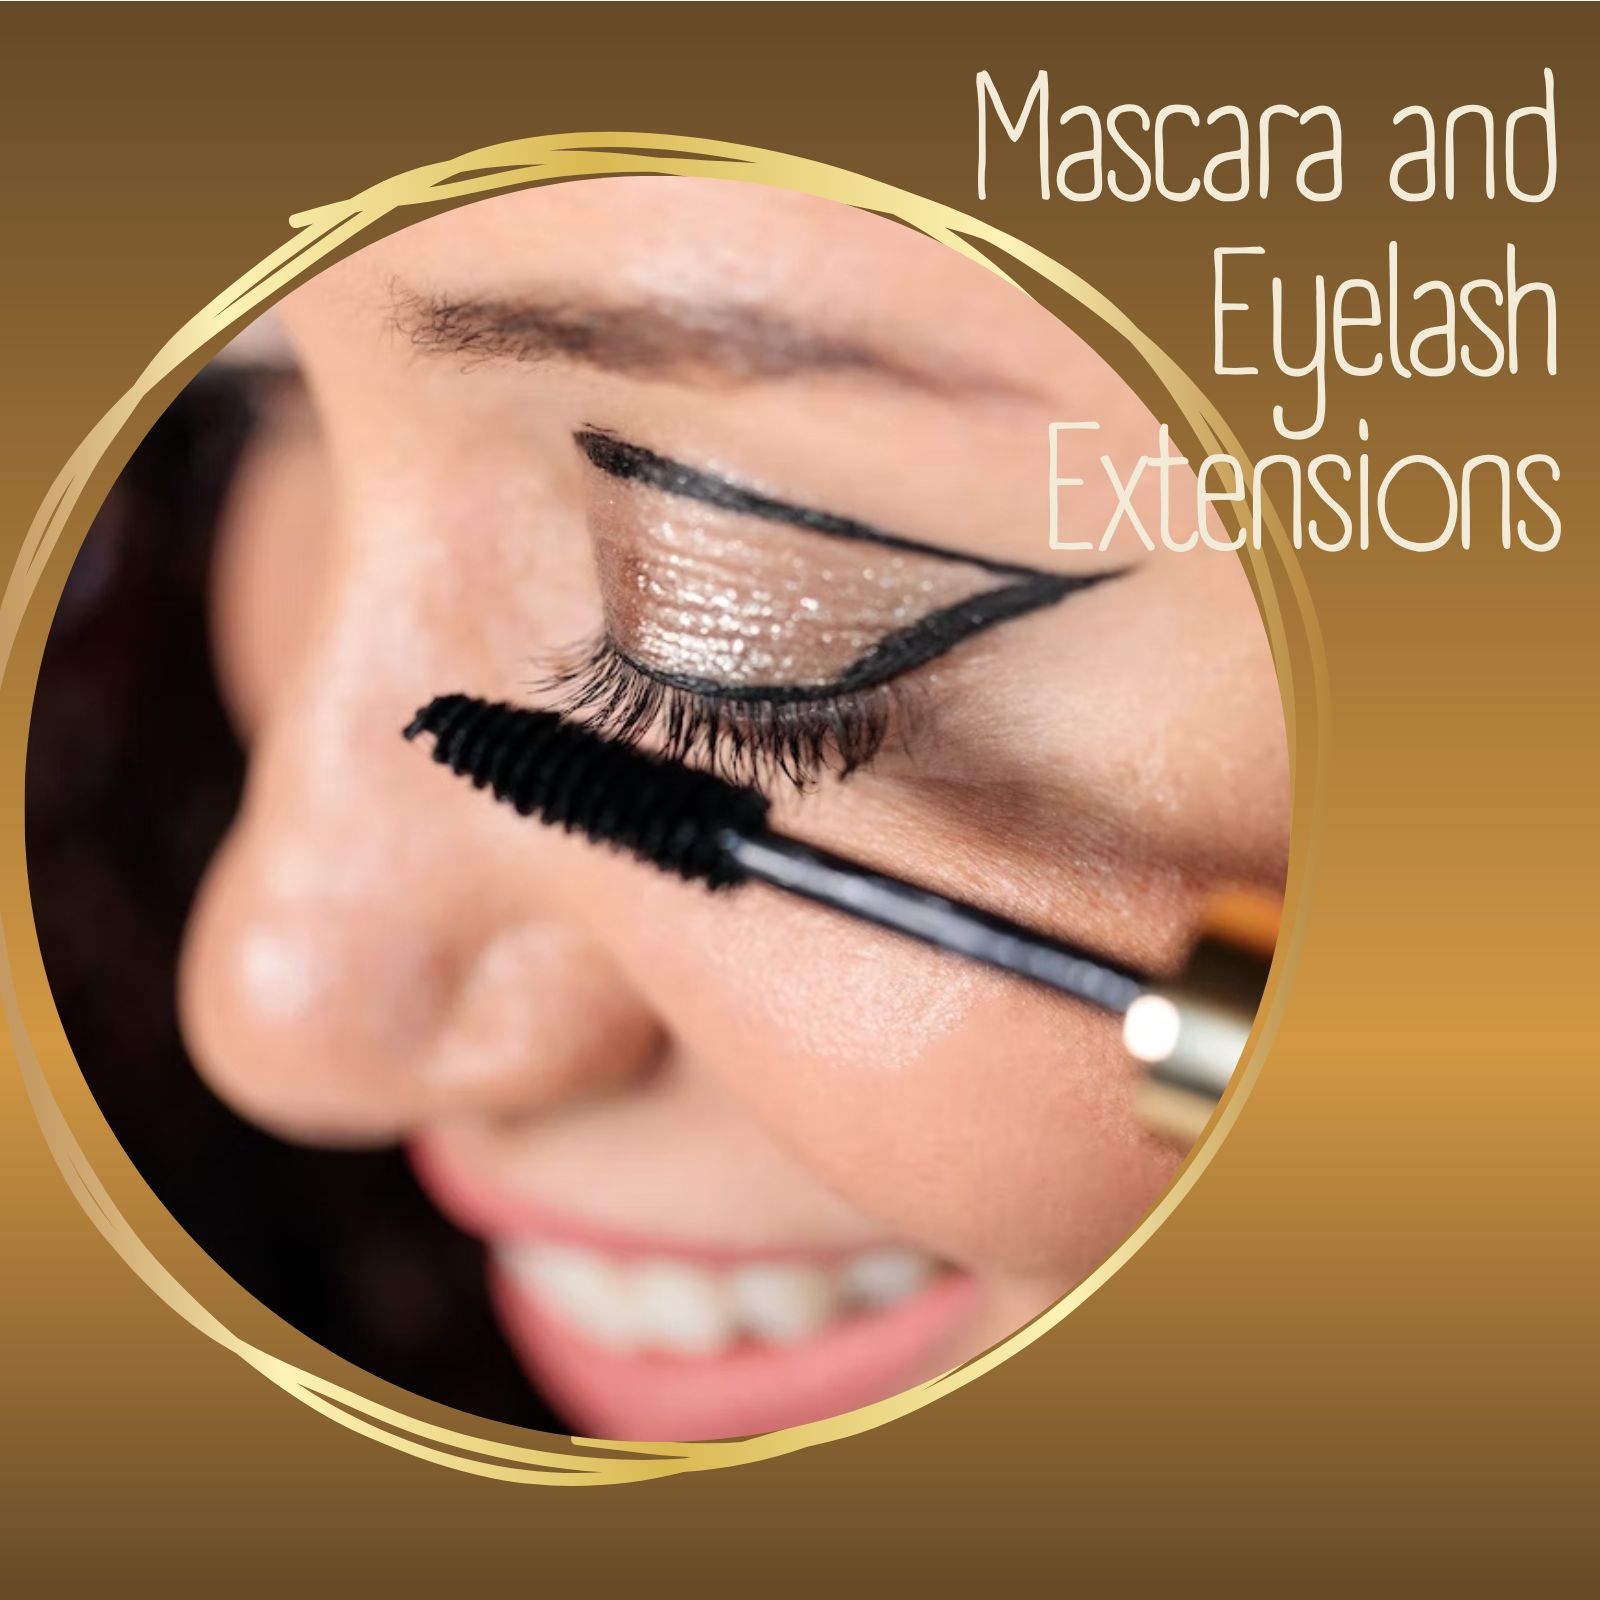 Mascara and Eyelash Extensions